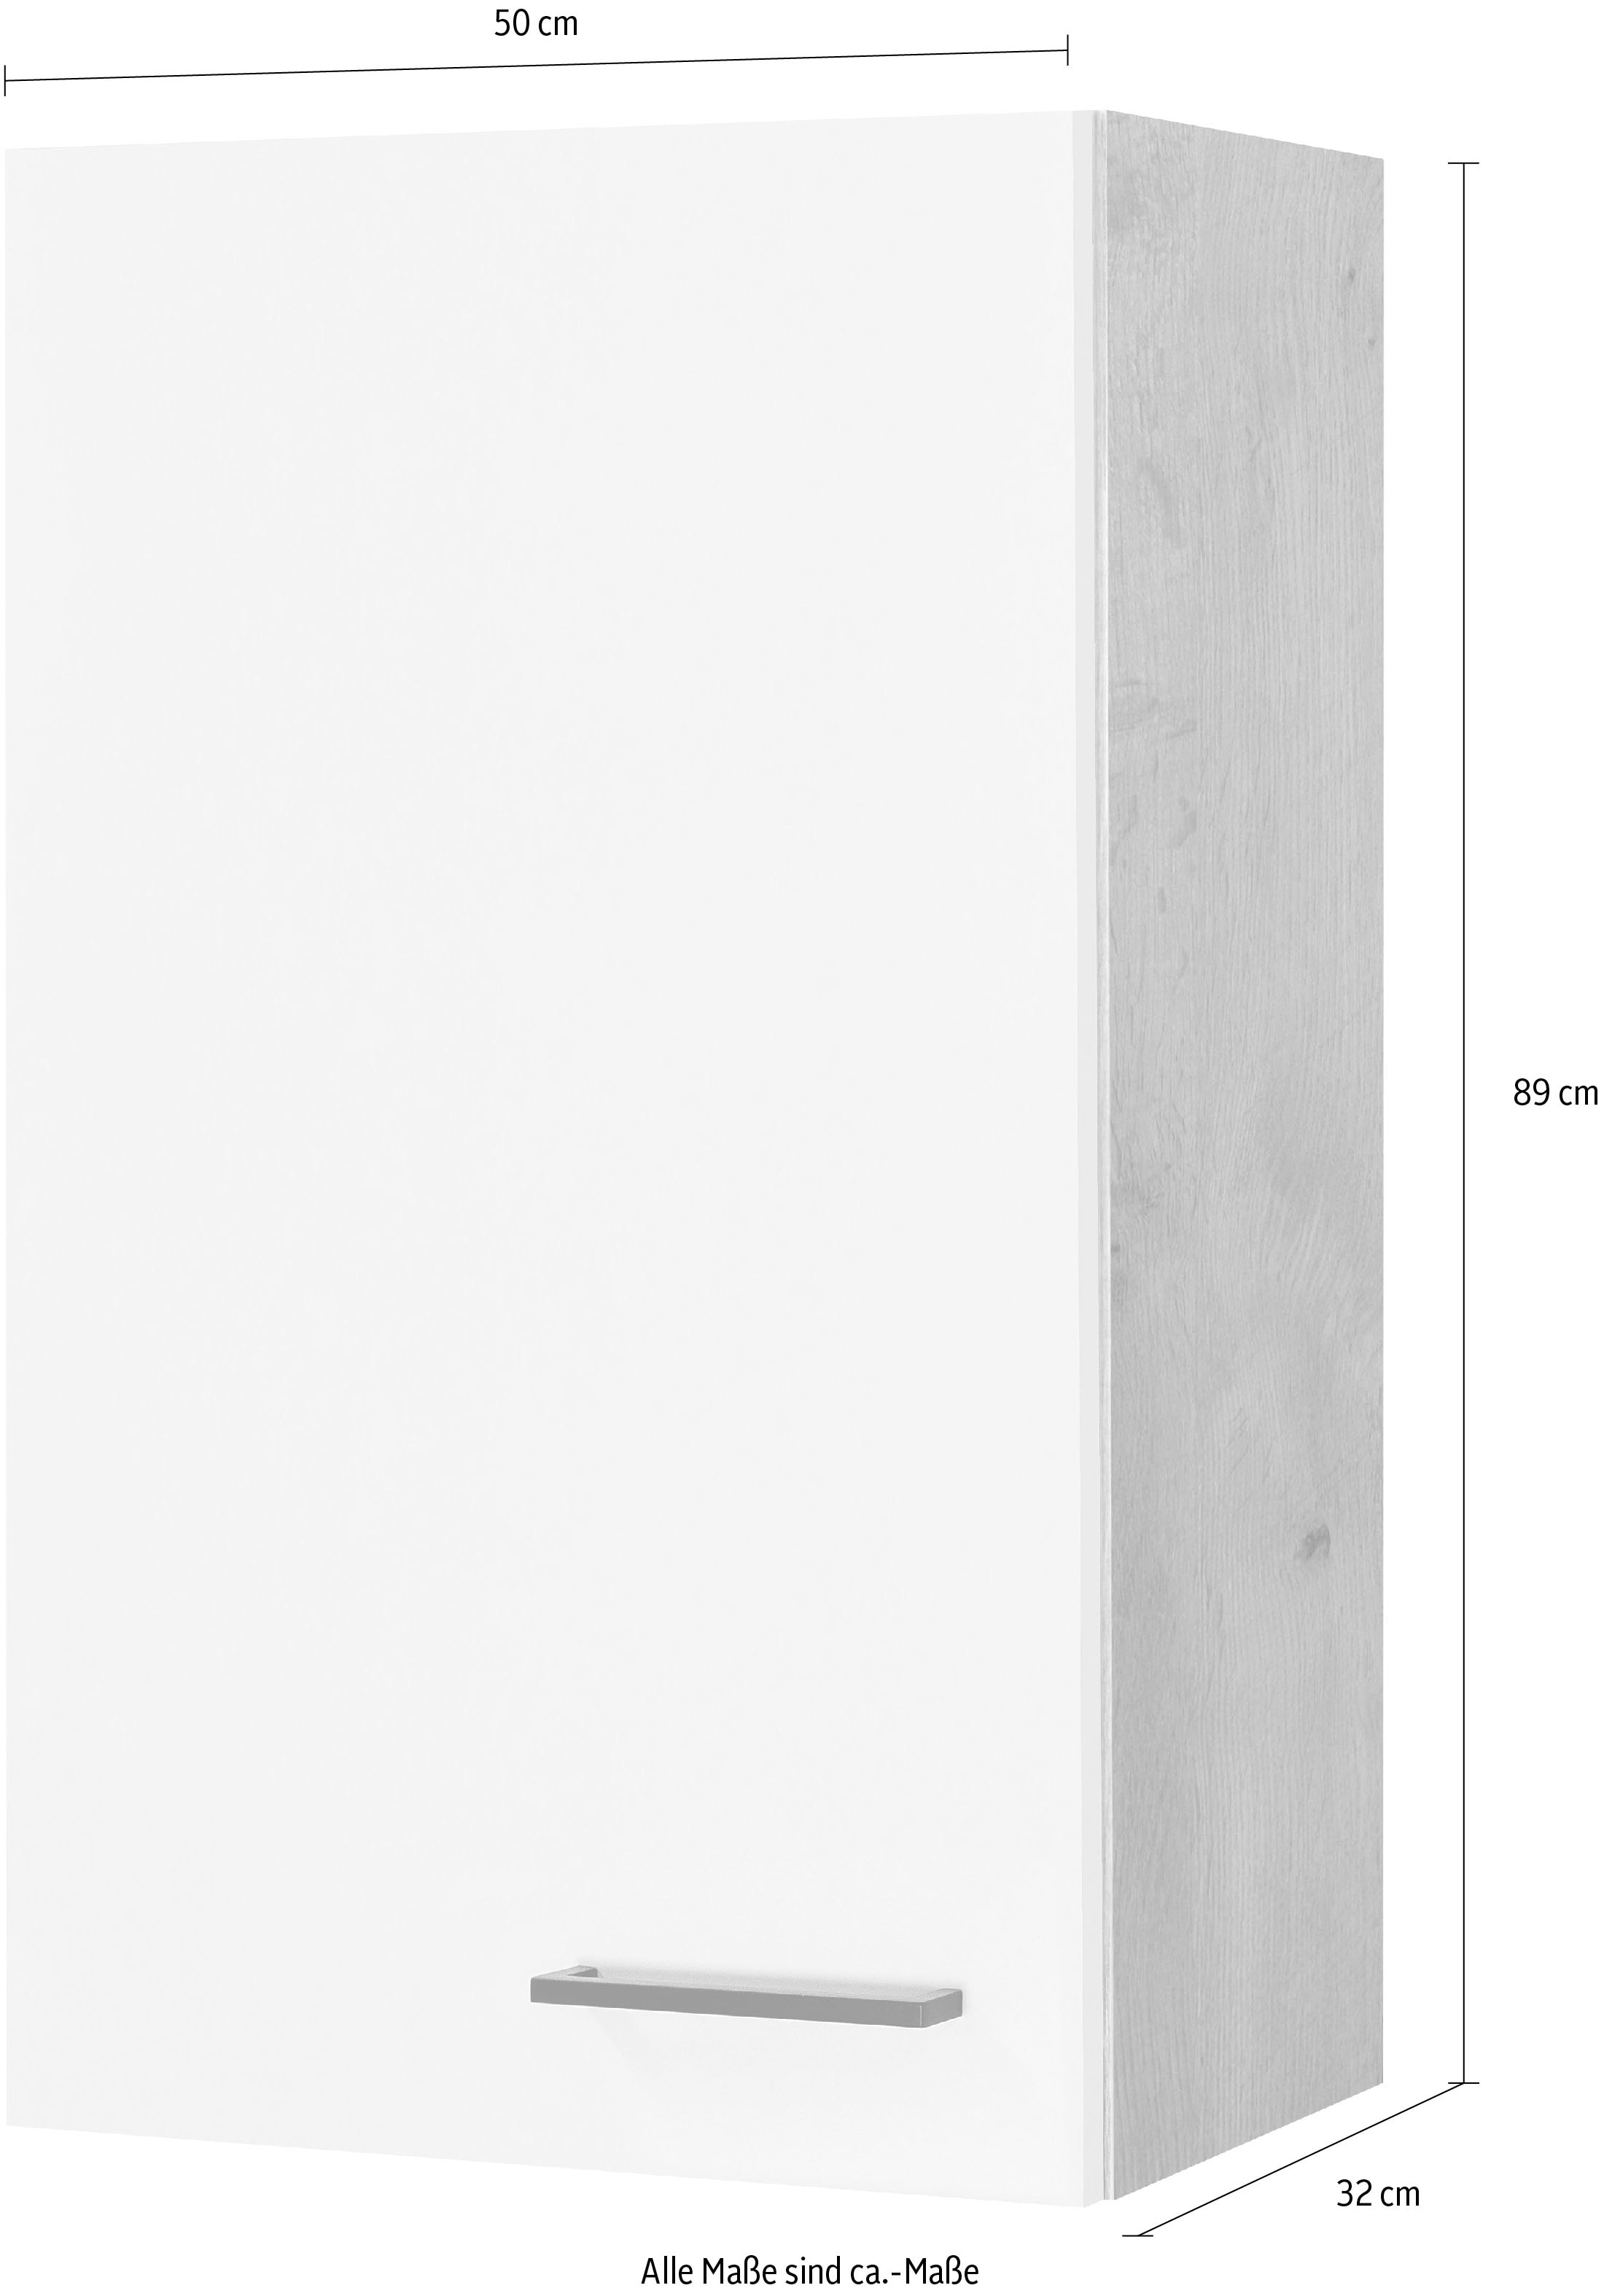 Flex-Well Hängeschrank »Morena«, (B x H x T) 50 x 89 x 32 cm, für viel Stauraum